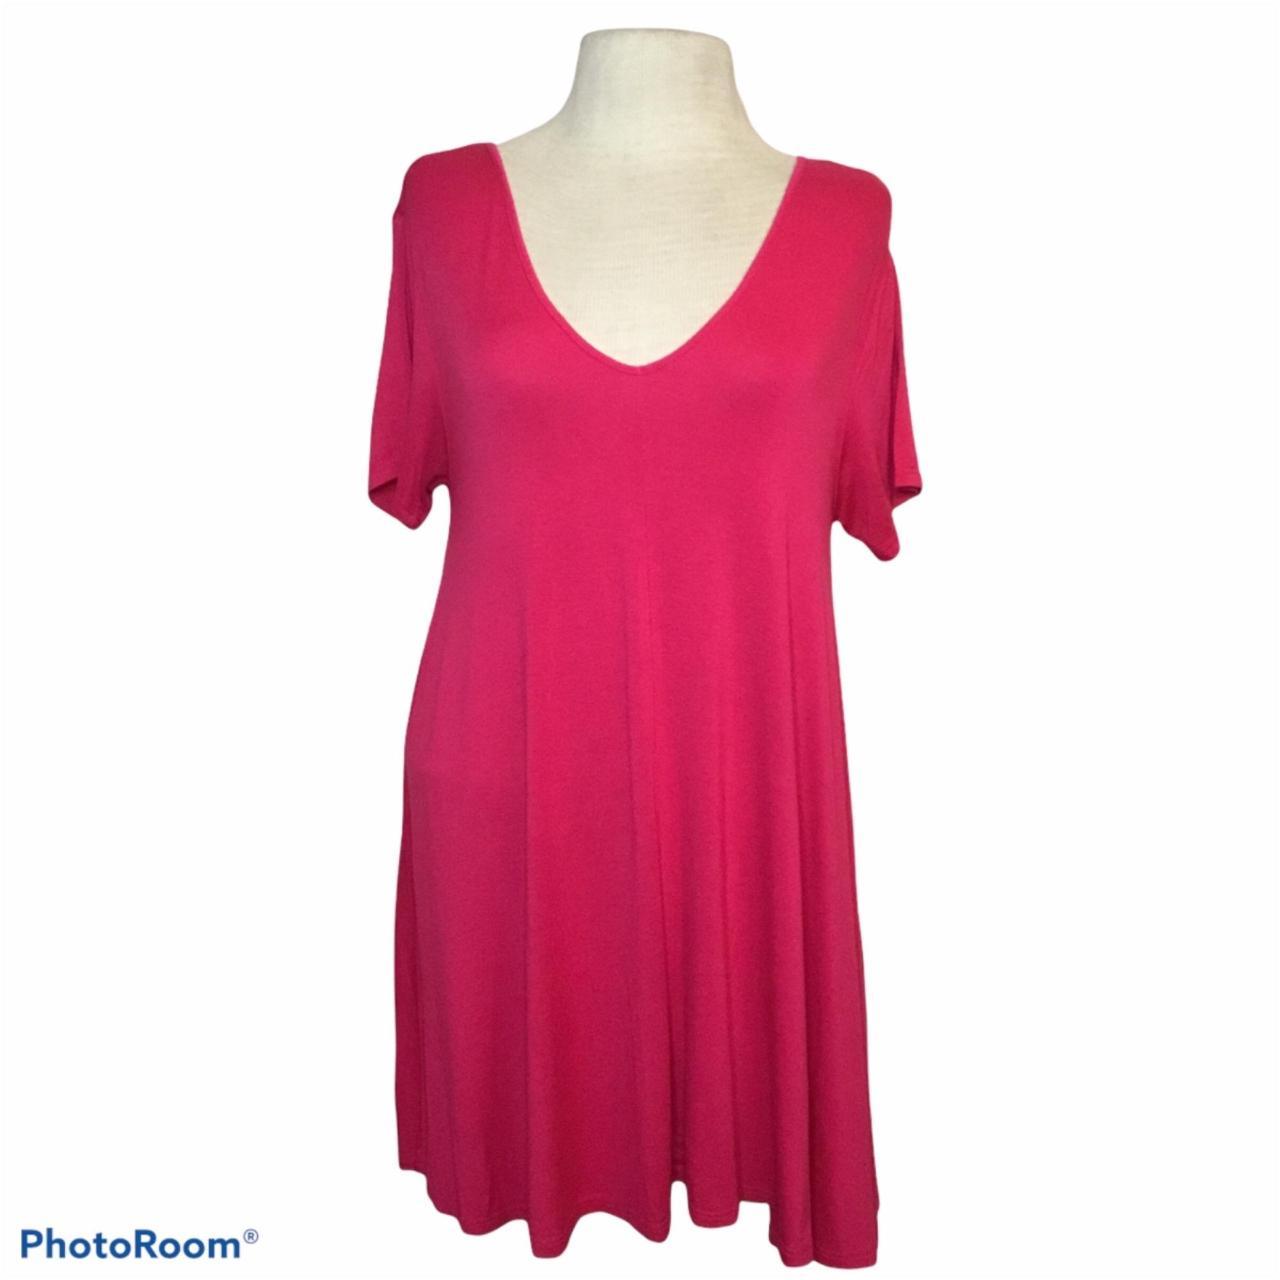 Pink Tunic Top Short Sleeves Ladies Medium - Style:... - Depop